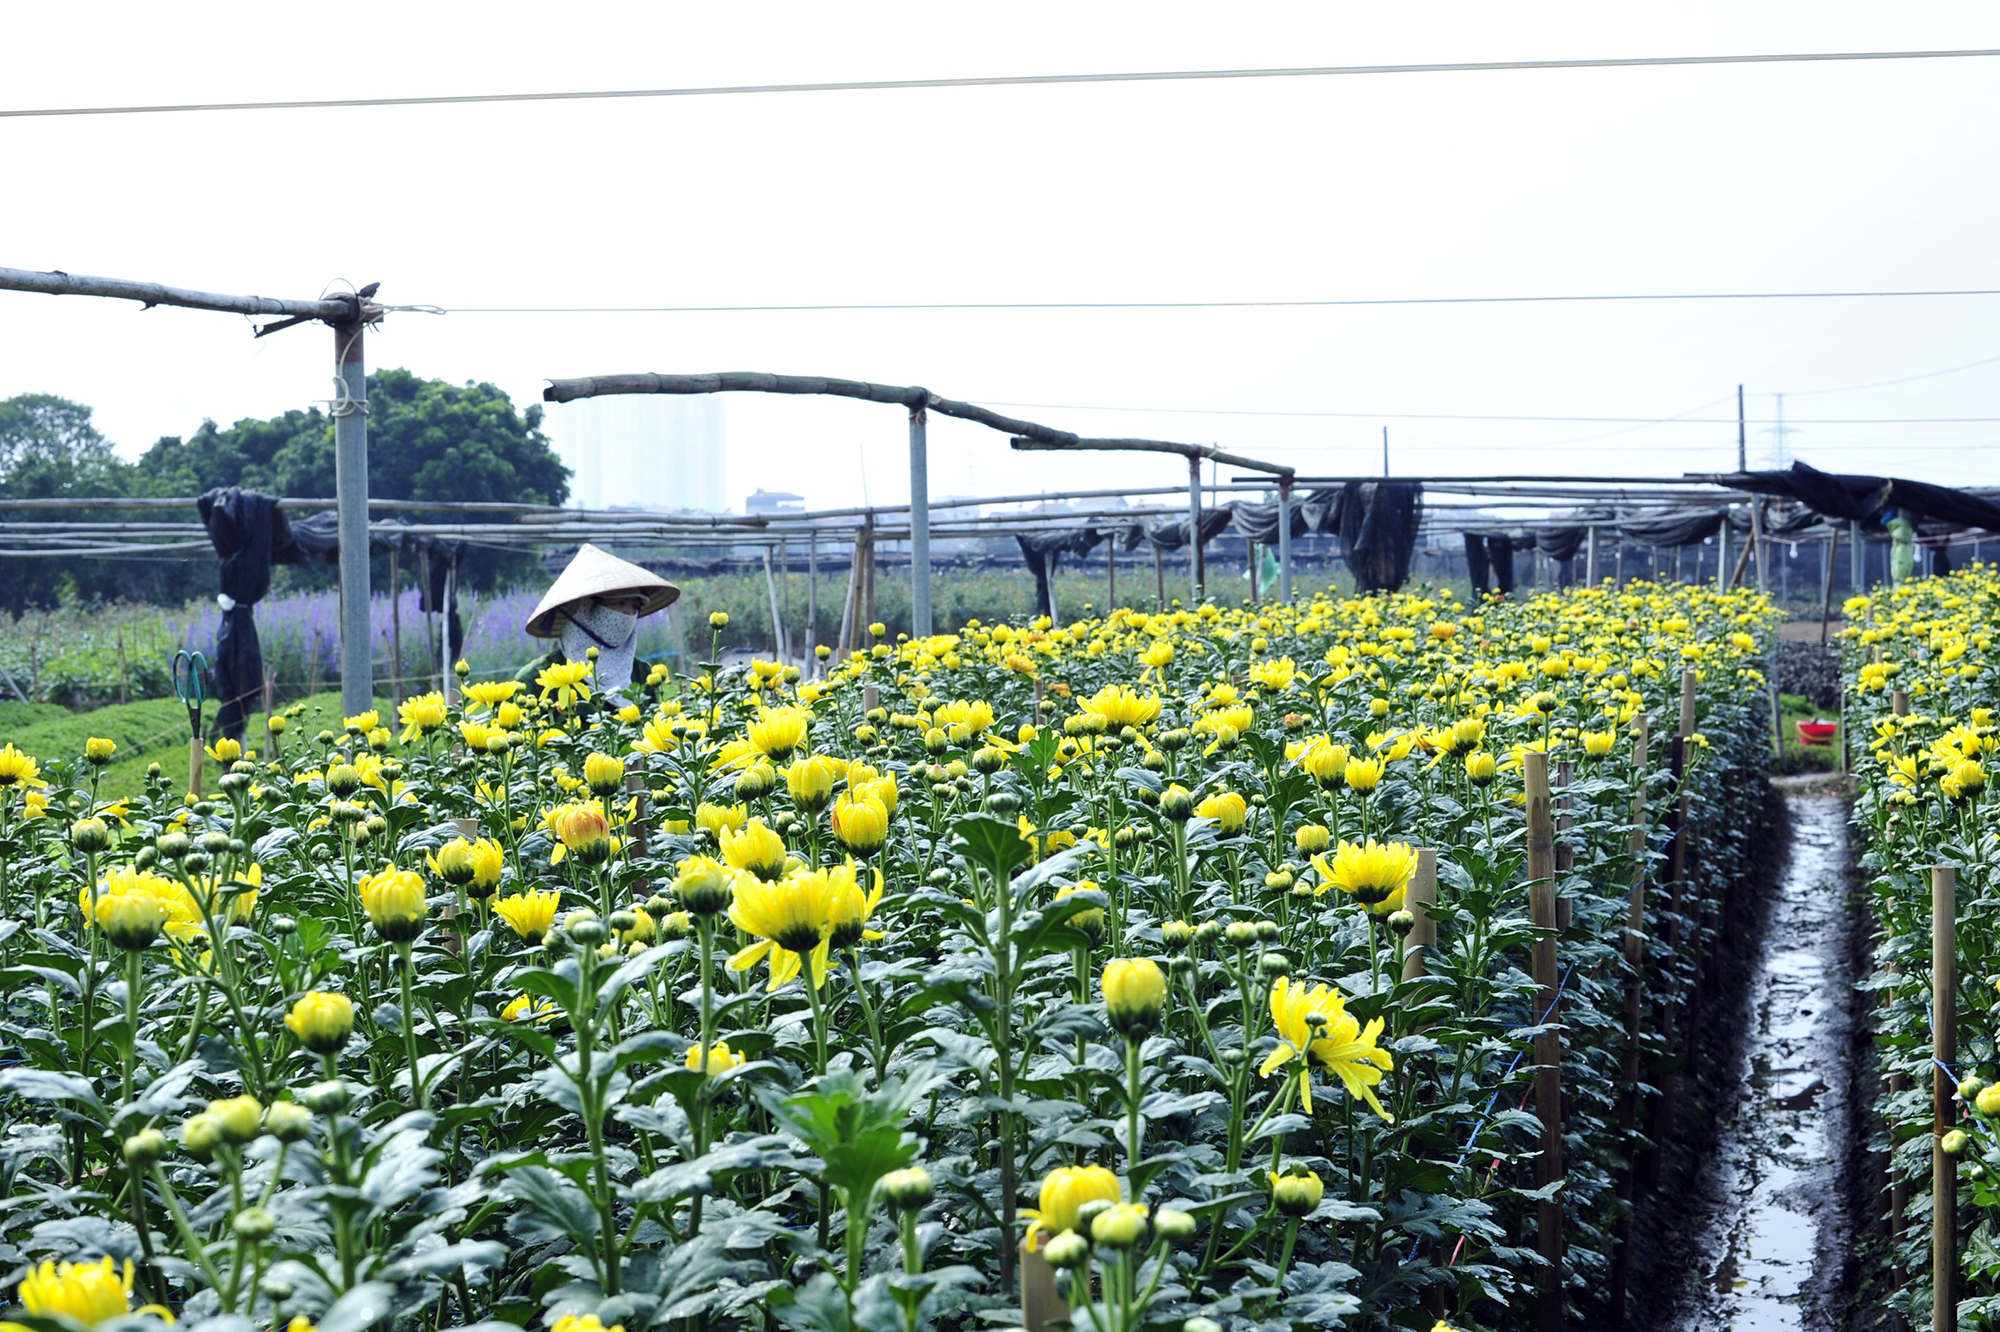 Hoa nở “lệch múi giờ”, nông dân Hà Nội thu hoạch sớm để bảo quản lạnh, chờ phục vụ người chơi đúng dịp Tết - Ảnh 2.